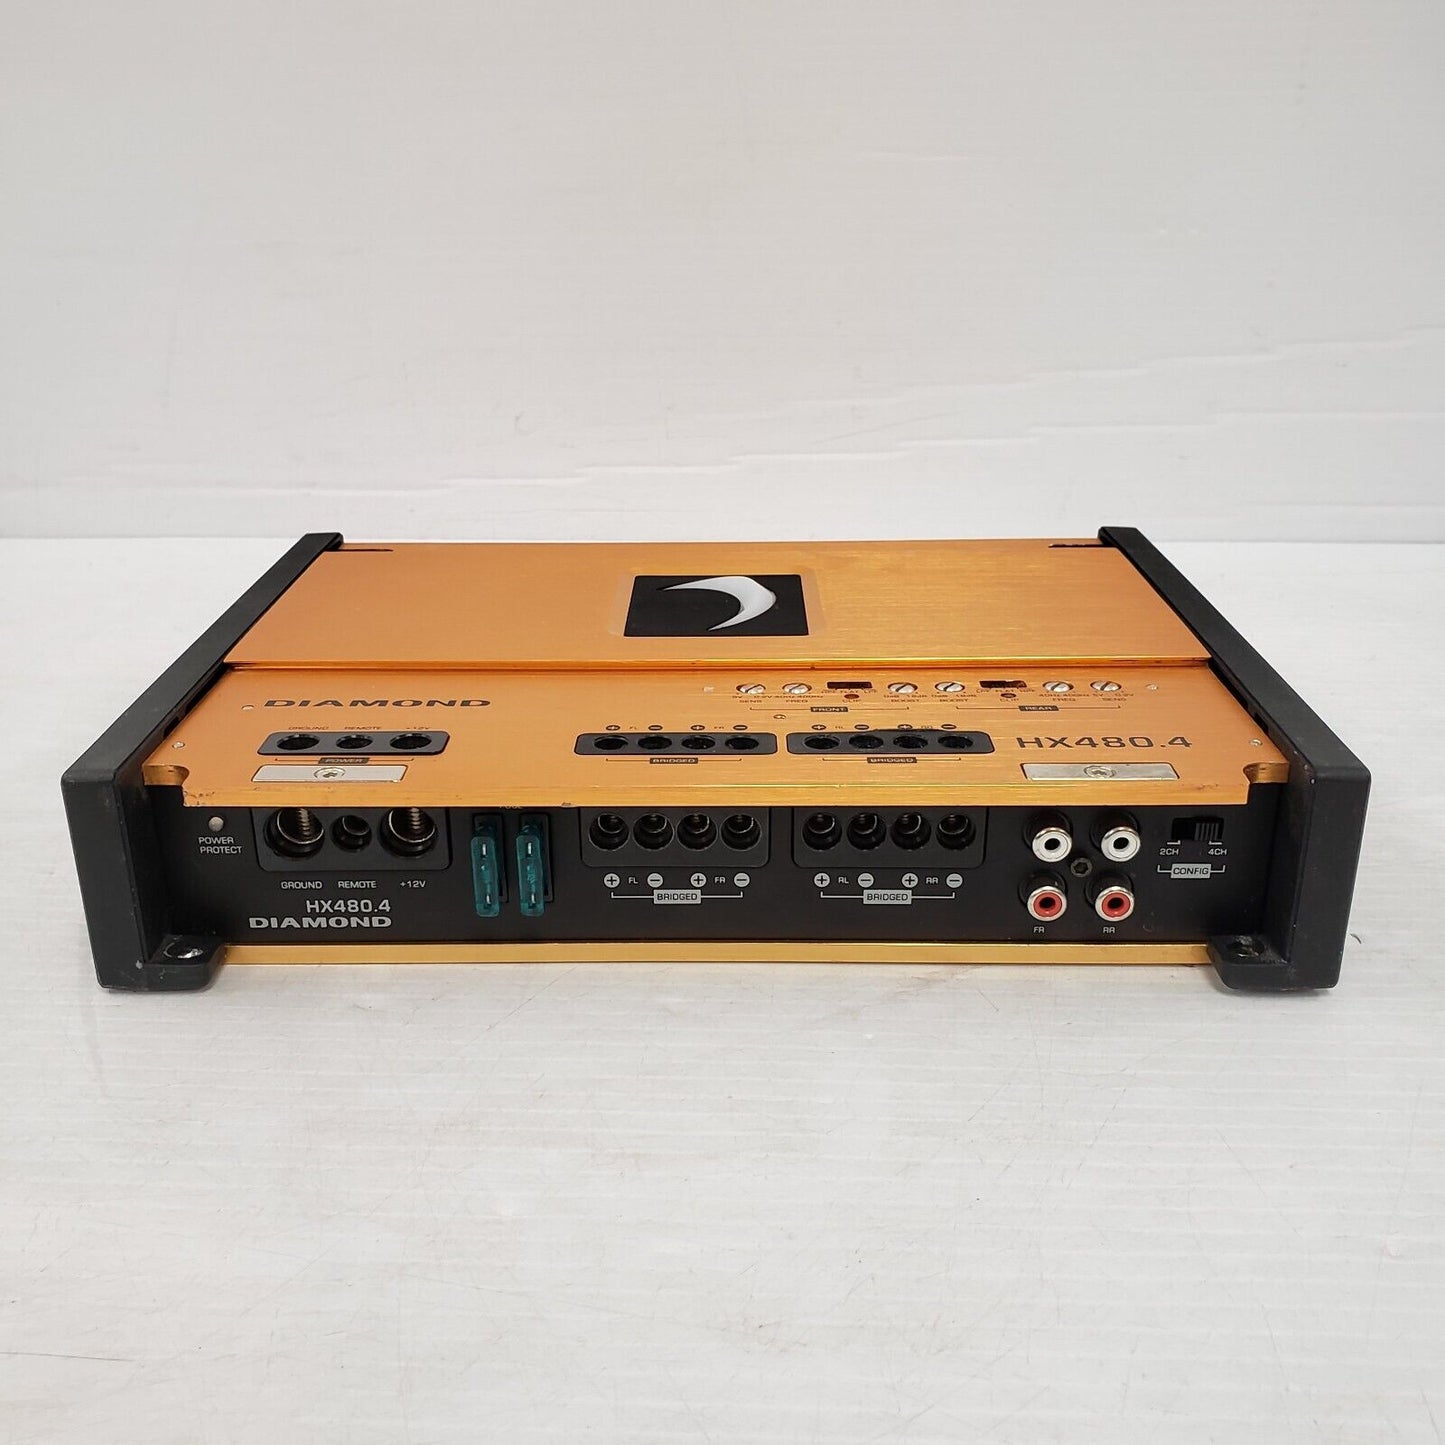 (53245-1) Diamond HX480.4 Car Amplifier